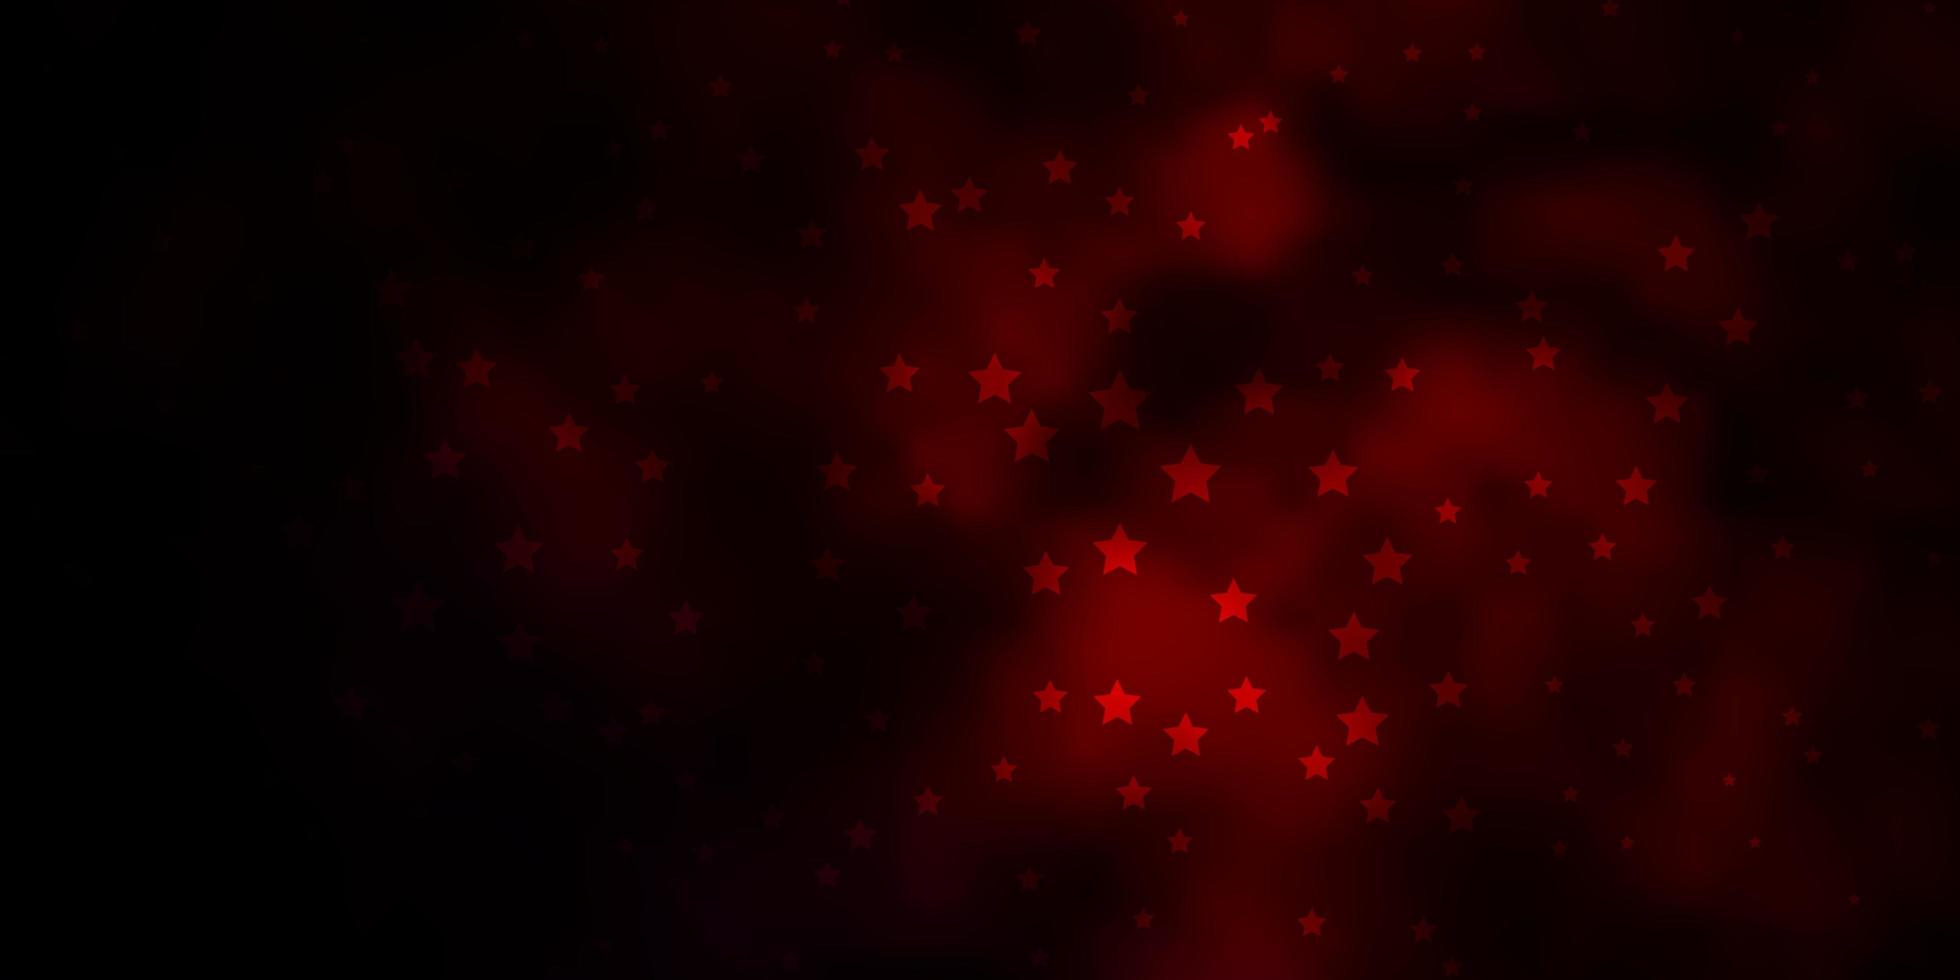 sfondo vettoriale rosso scuro con stelle piccole e grandi. illustrazione colorata con stelle sfumate astratte. miglior design per il tuo annuncio, poster, banner.